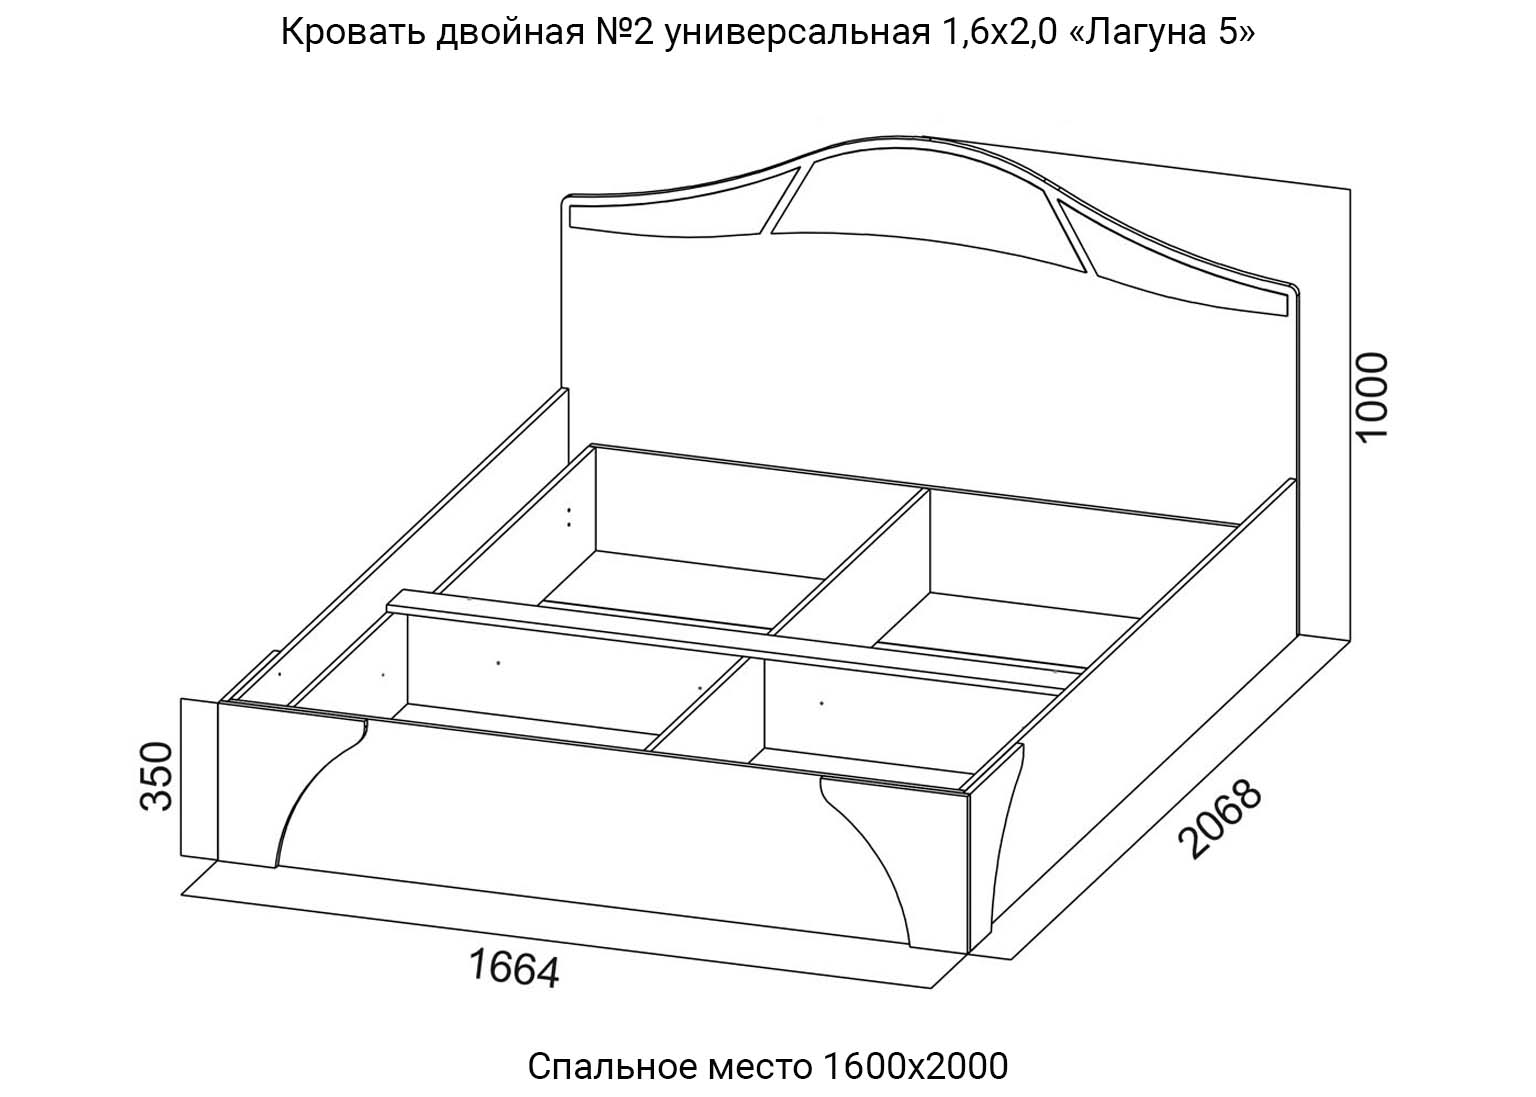 Спальня Лагуна 5 Кровать двойная №2 универсальная 1,6х2,0 схема SV-Мебель